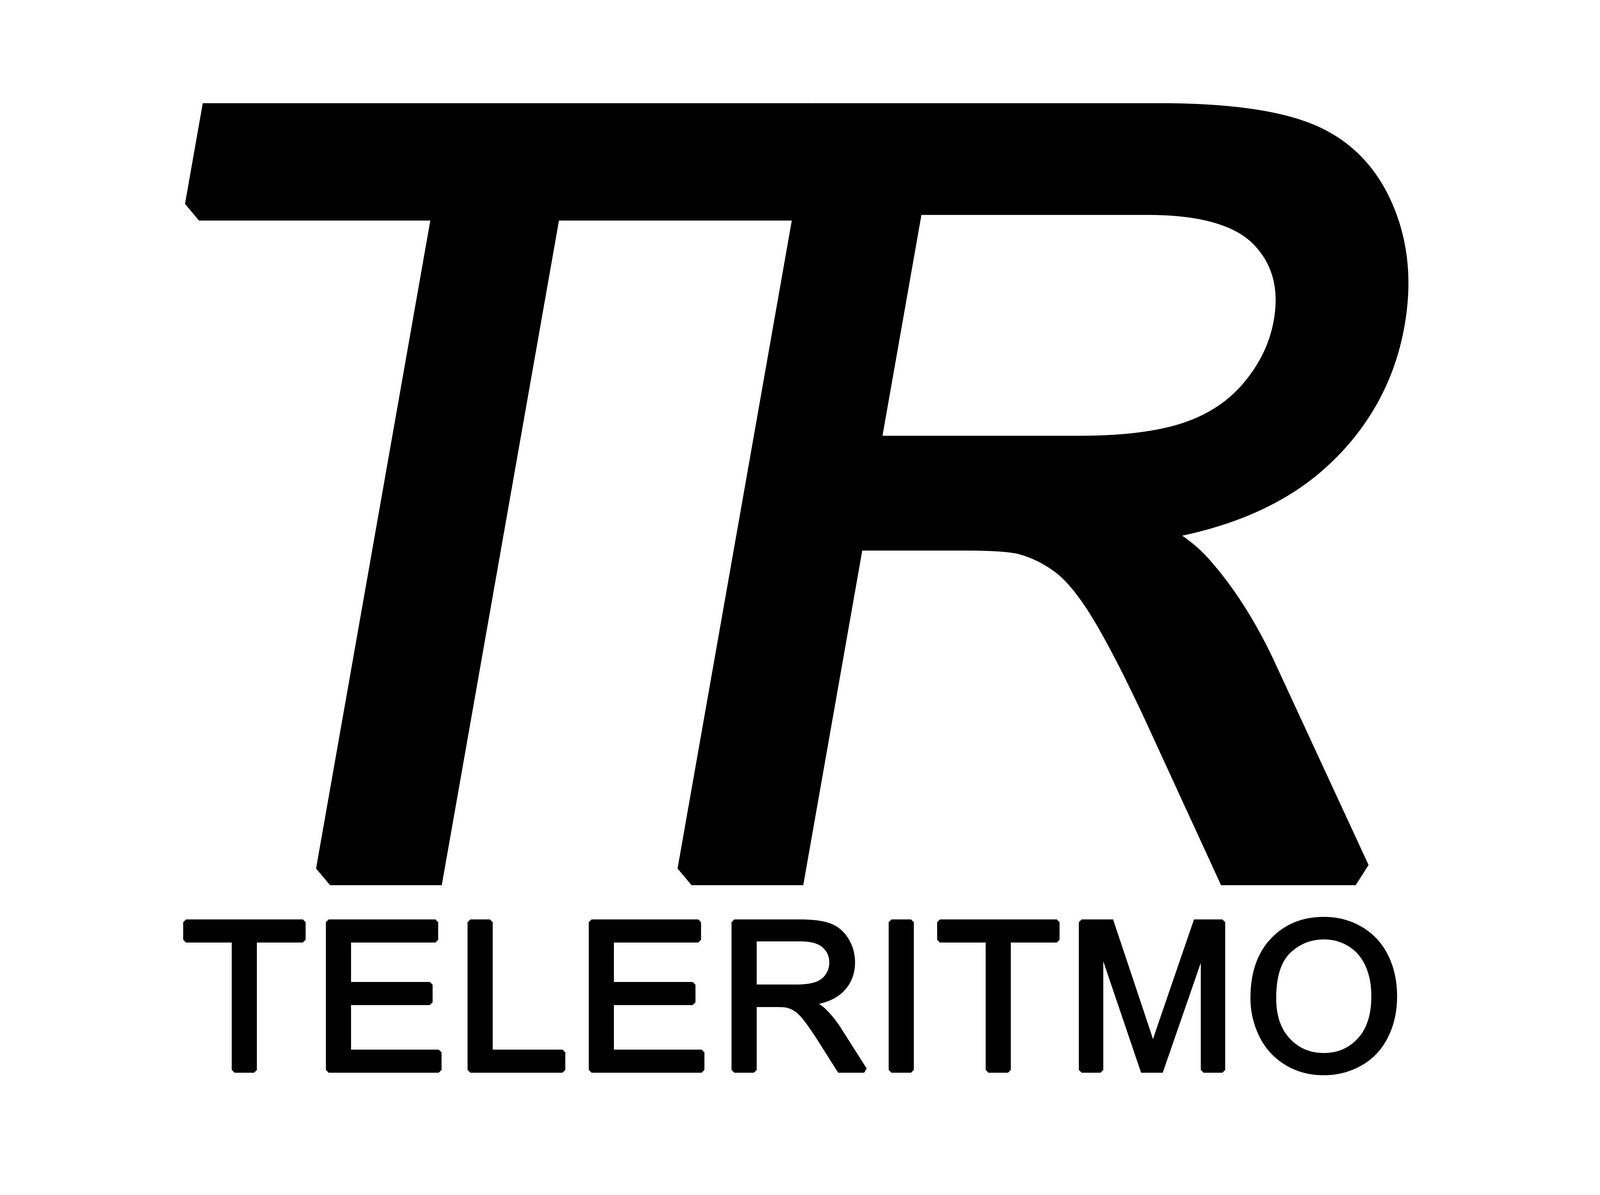 TeleRitmo Italia Tv